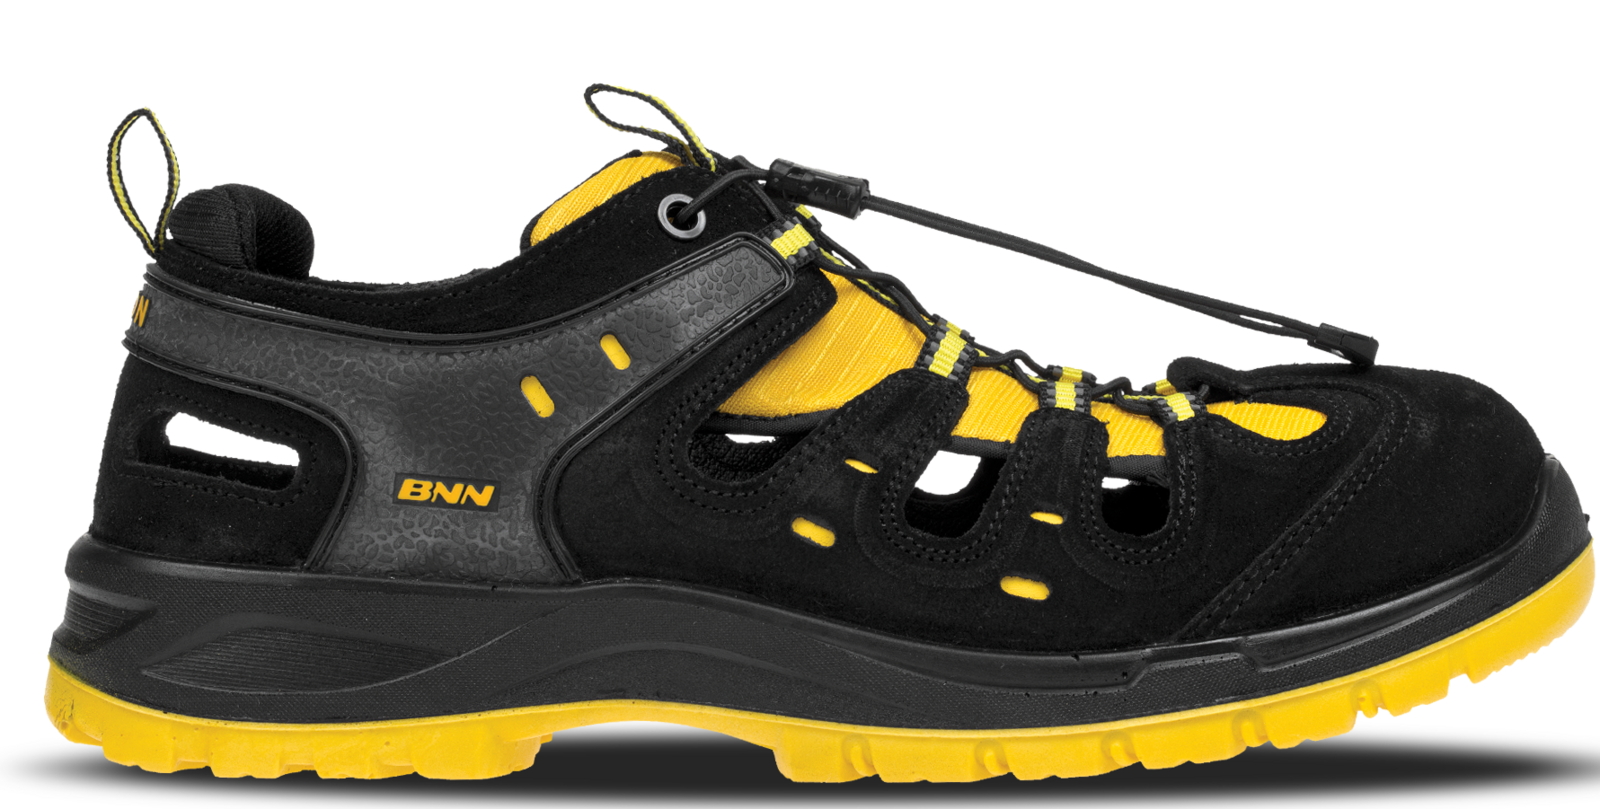 Bezpečnostné sandále Bombis lite NM S1 - veľkosť: 36, farba: žltá